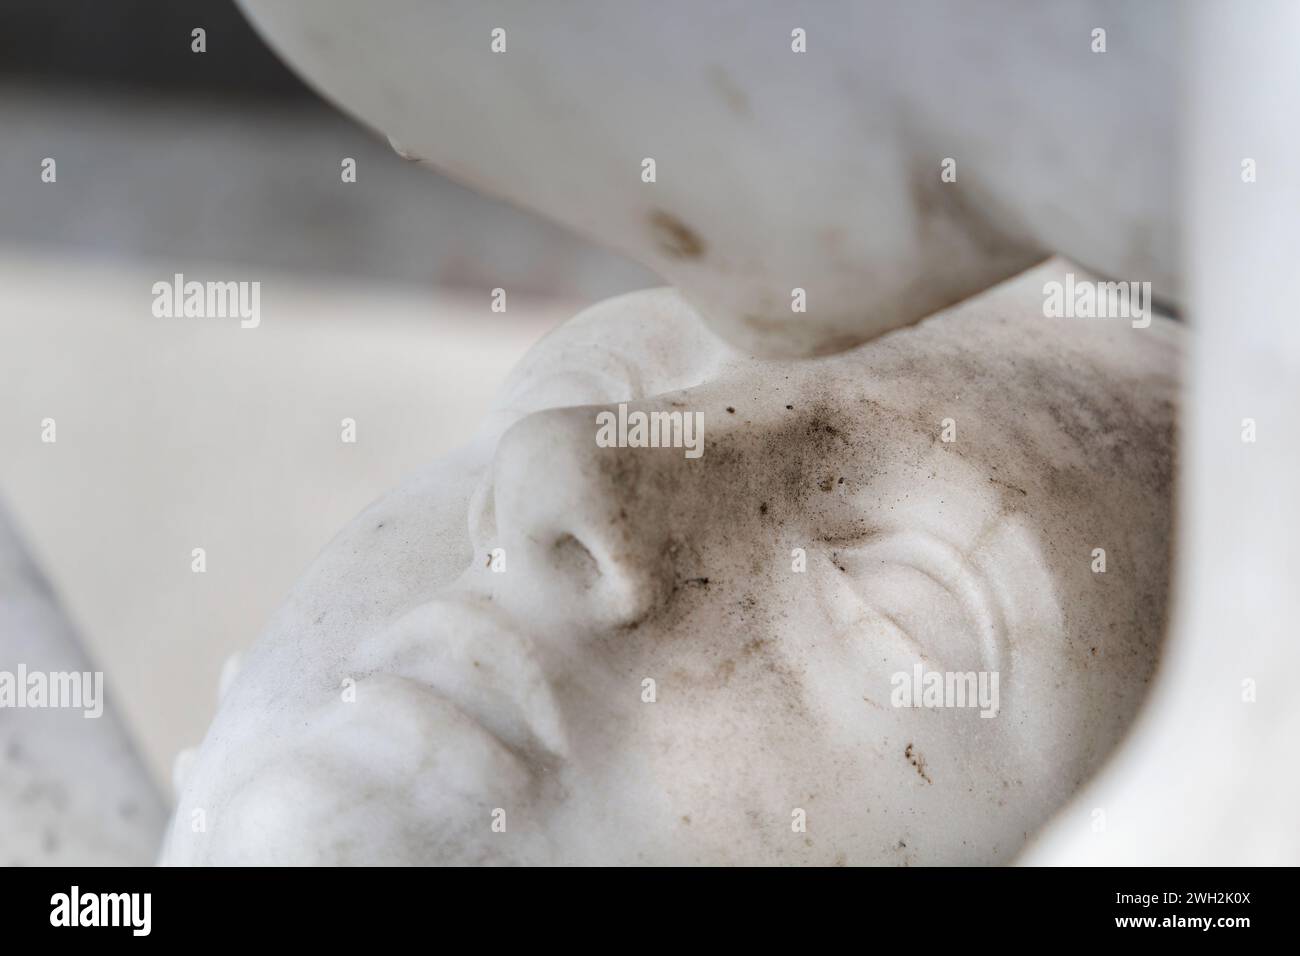 Psyche wiederbelebt durch Amors Kuss (Kopie der Statue von Antonio Canova) - Detail des Grabes von Alain Lesieutre - Friedhof Montparnasse - Paris, Frankreich Stockfoto